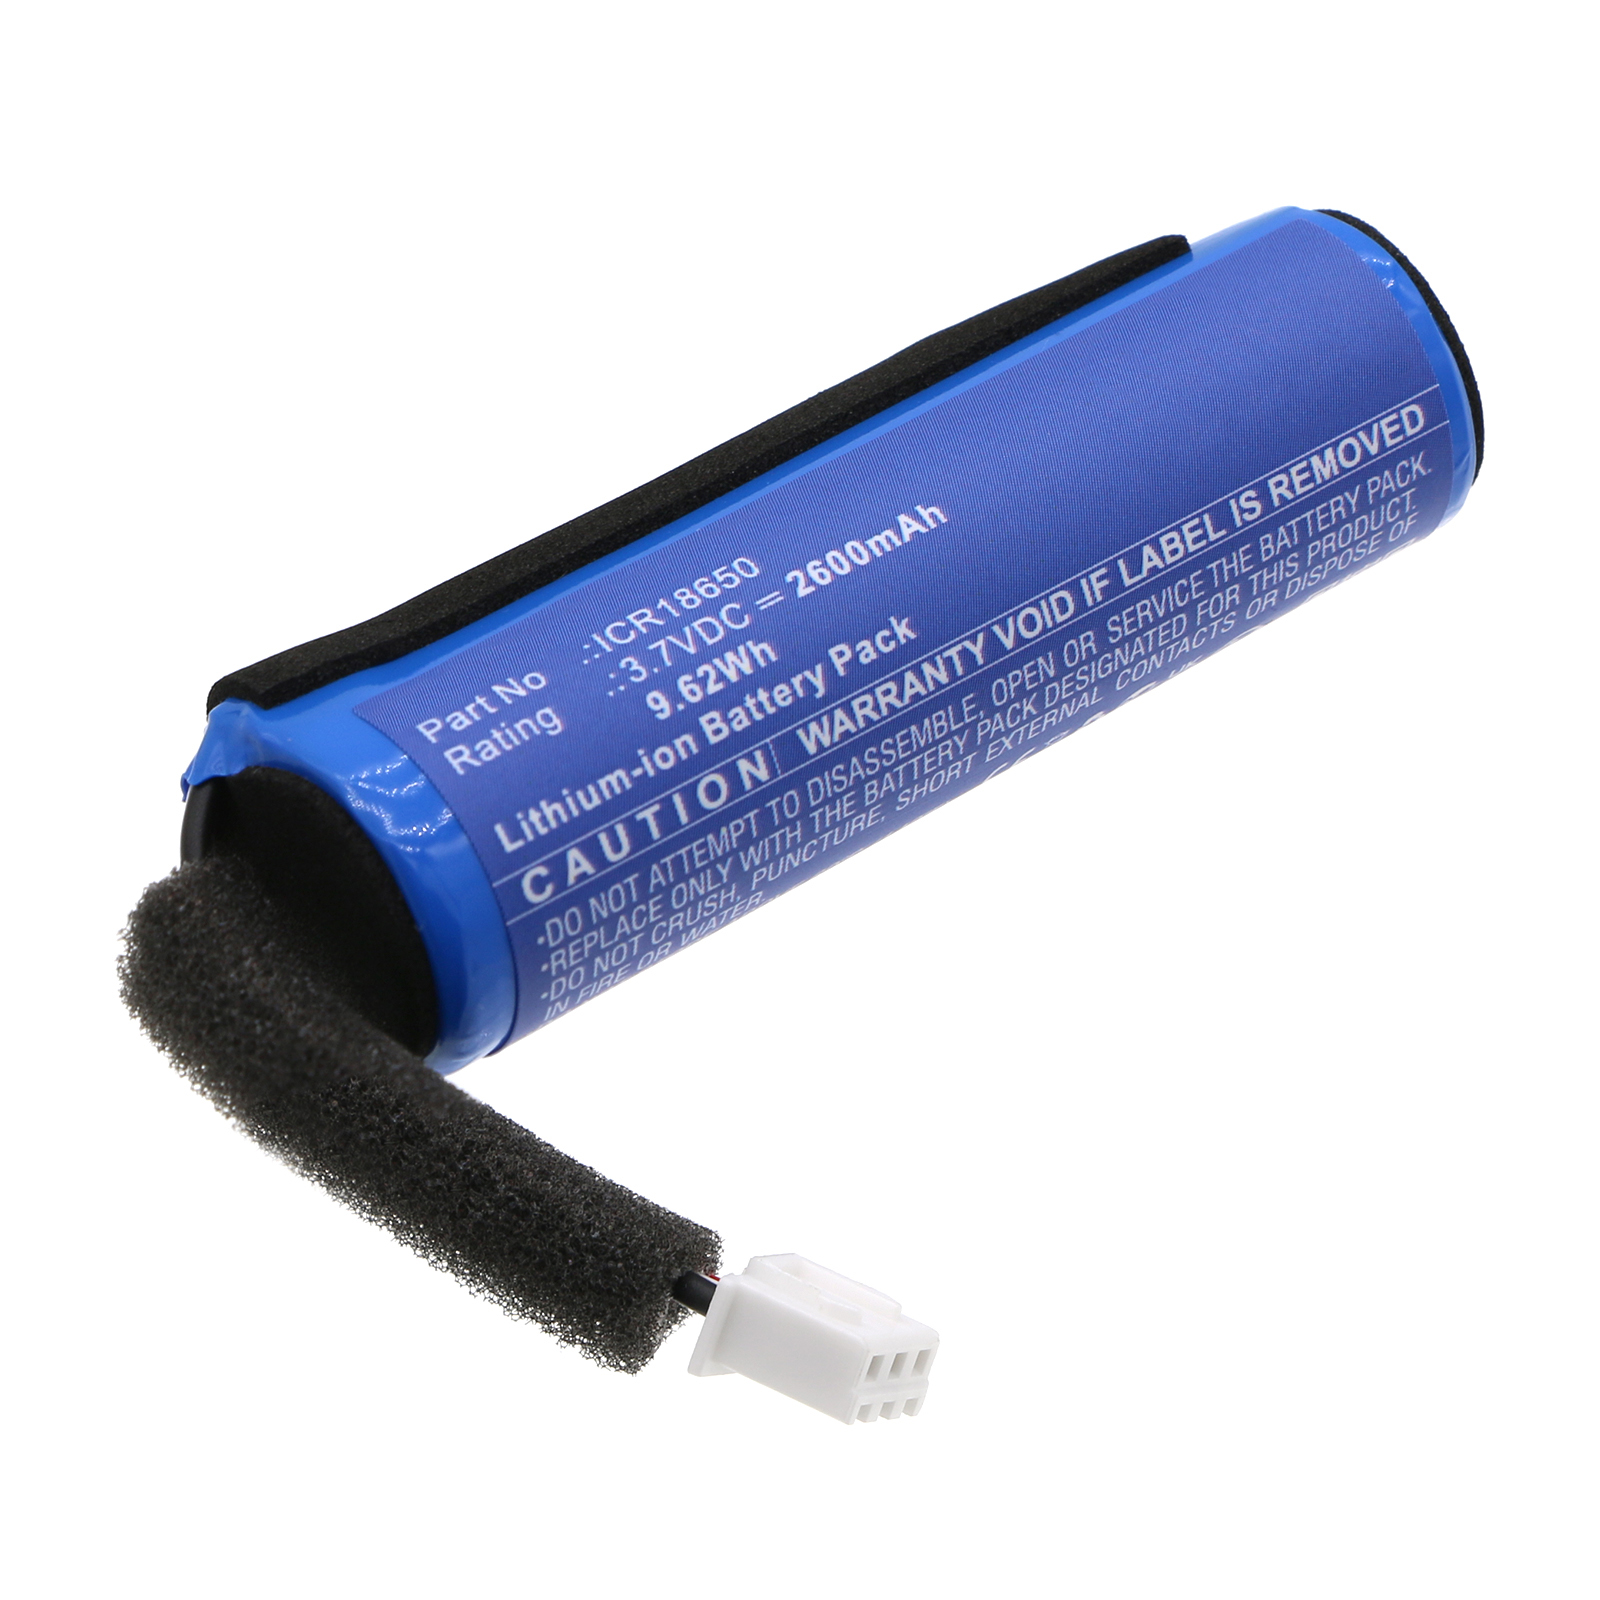 Synergy Digital Speaker Battery, Compatible with Groove onn ICR18650 Speaker Battery (Li-ion, 3.7V, 2600mAh)